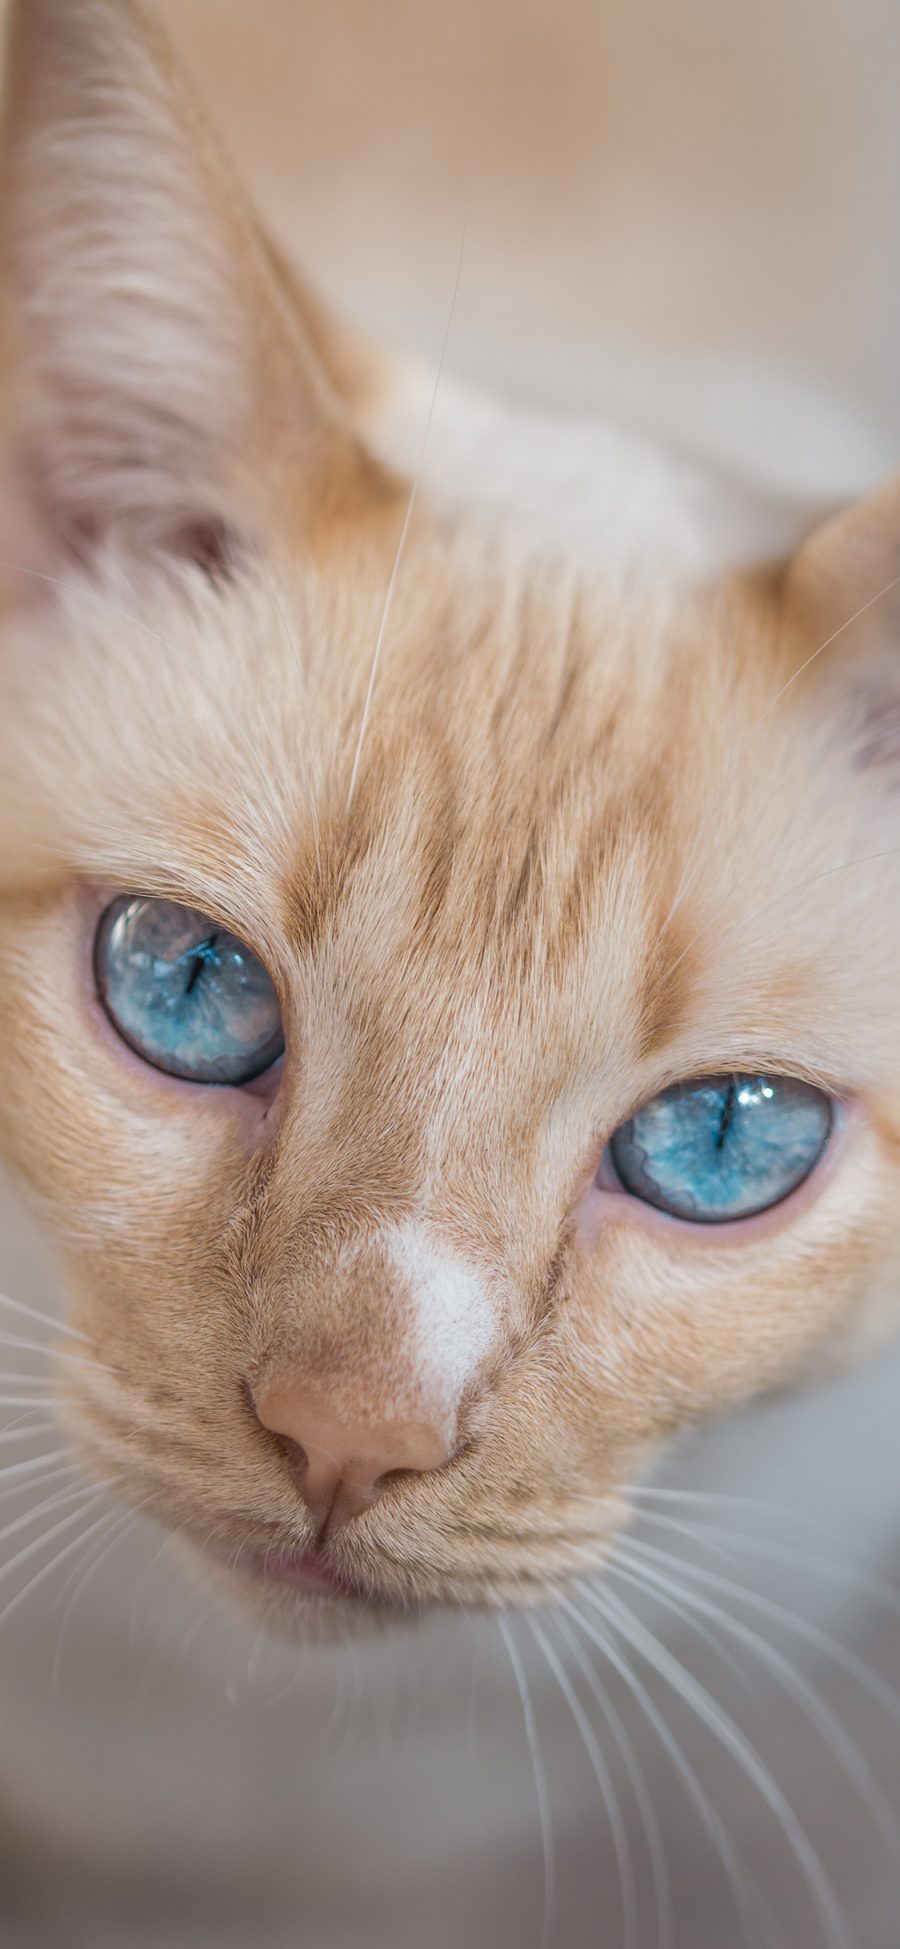 [2436×1125]猫咪 宠物 瞳孔 眼睛 苹果手机壁纸图片